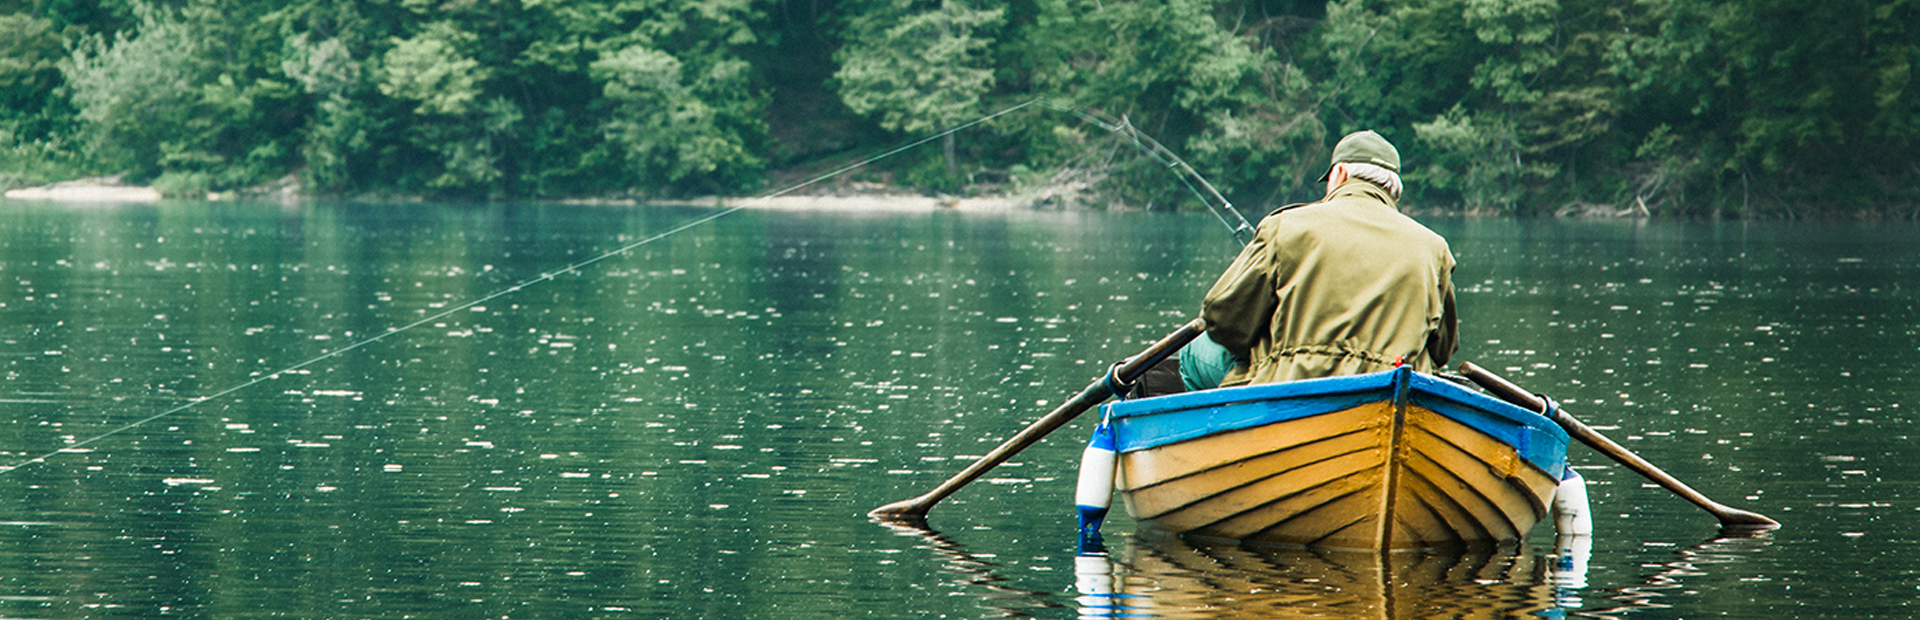 Na zdjęciu mężczyzna łowiący ryby siedzący w żółto-niebieskiej łódce pośrodku jeziora. 